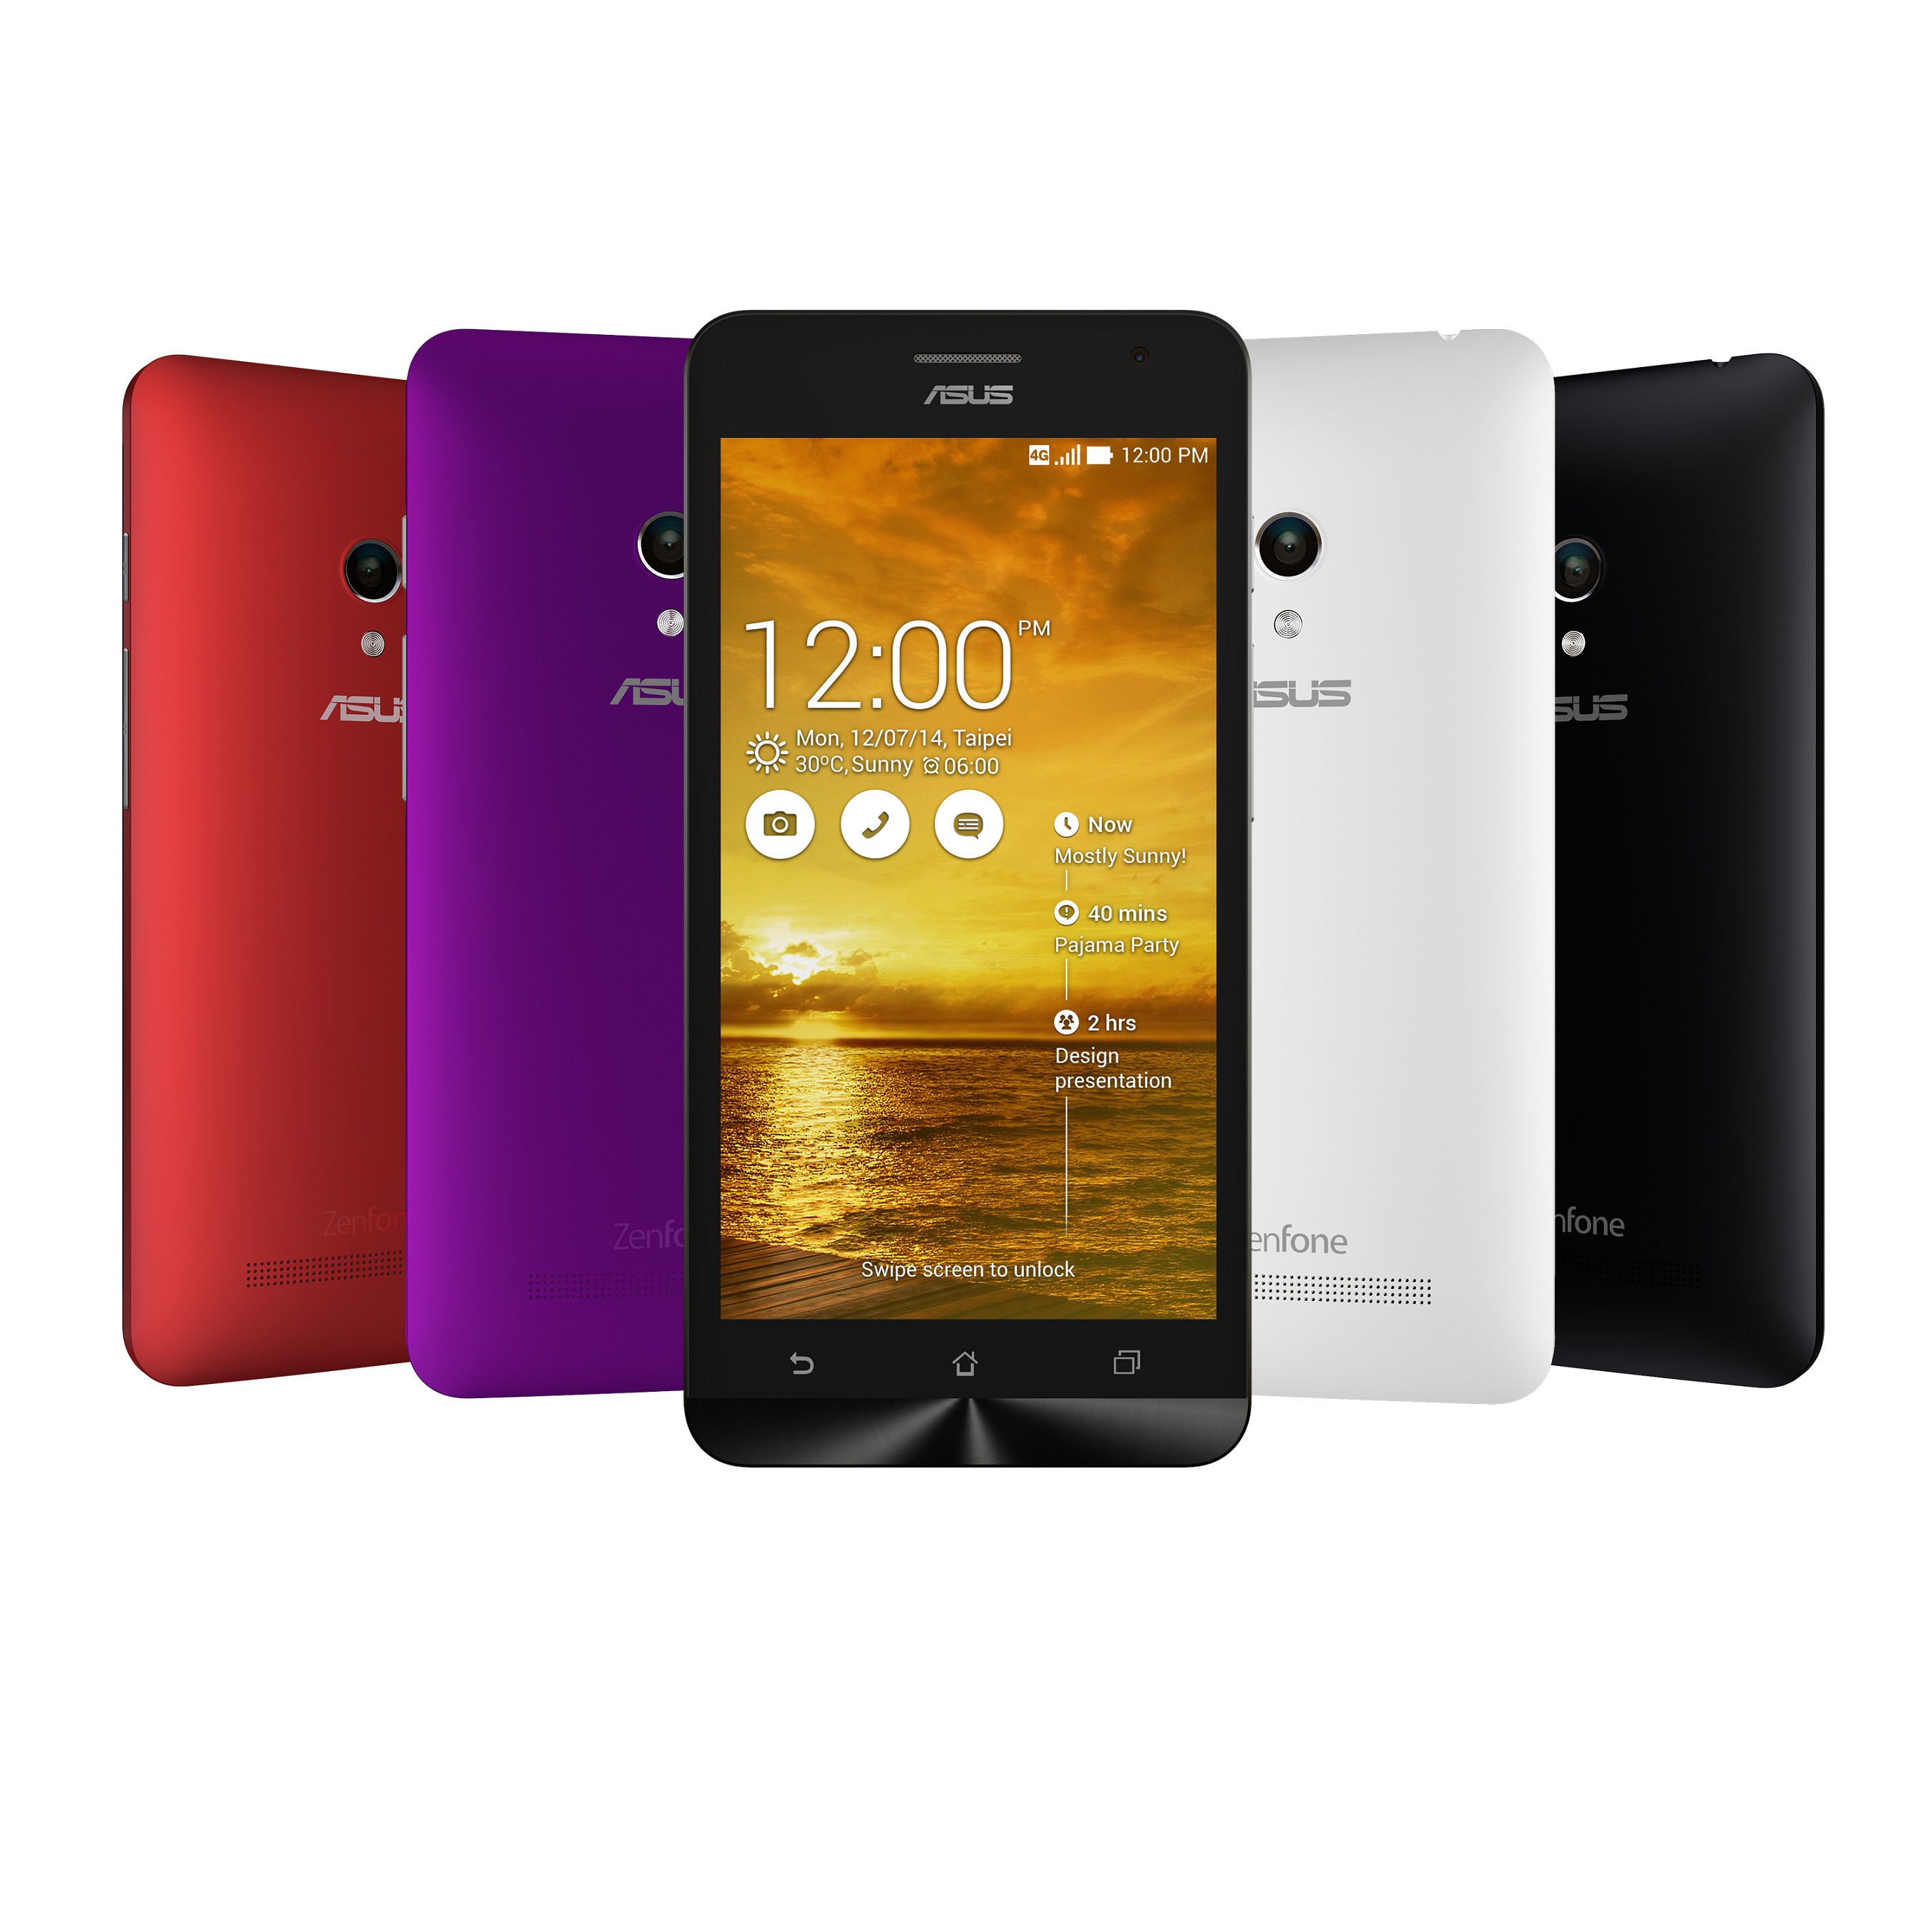 華碩暢銷智慧手機ZenFone 5 3G版「魔幻紫」新色限量到貨